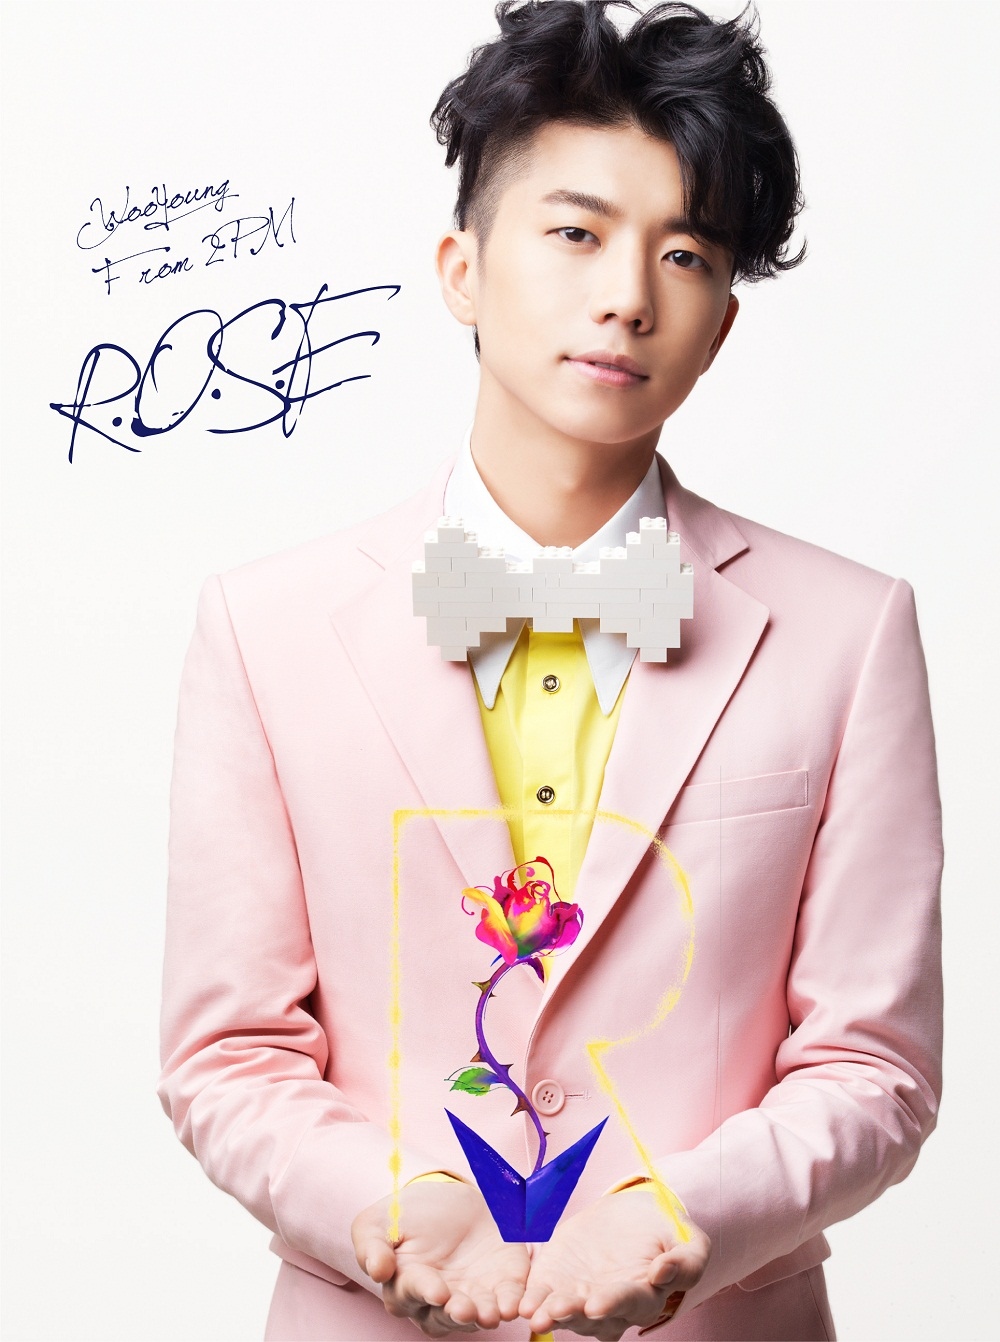 2PM ウヨン、日本ソロシングル「R.O.S.E」3月4日発売決定！ - Kstyle